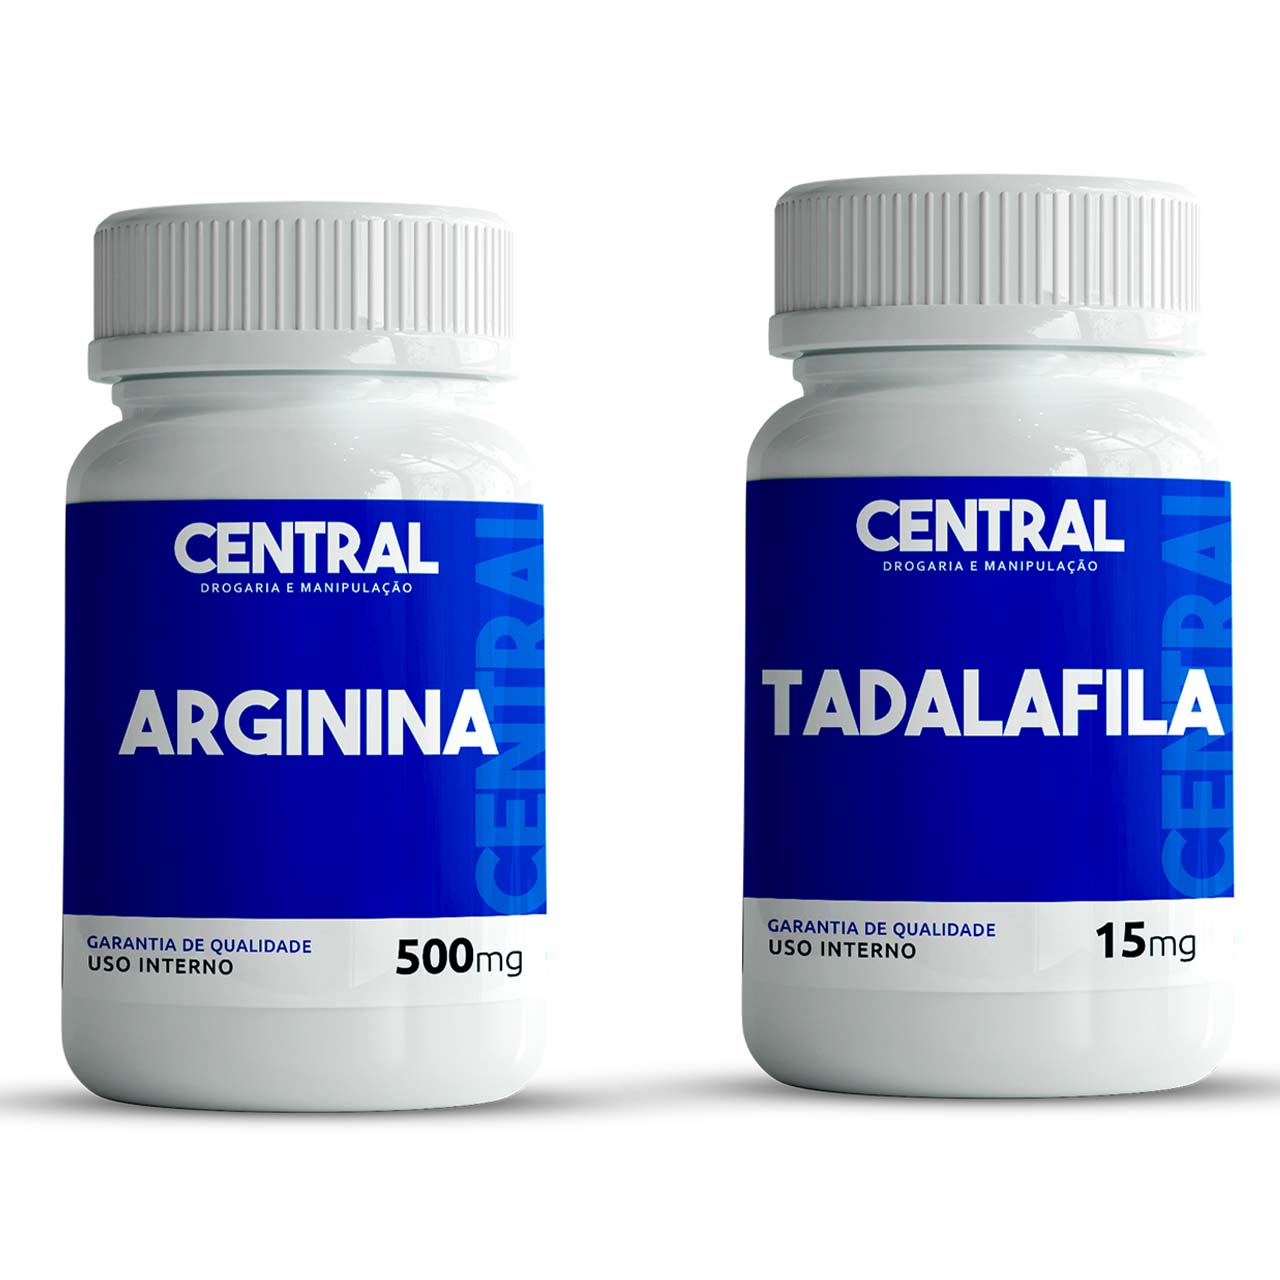 Tadalafila 15mg - 120 cápsulas + Arginina 500mg - 120 cápsulas